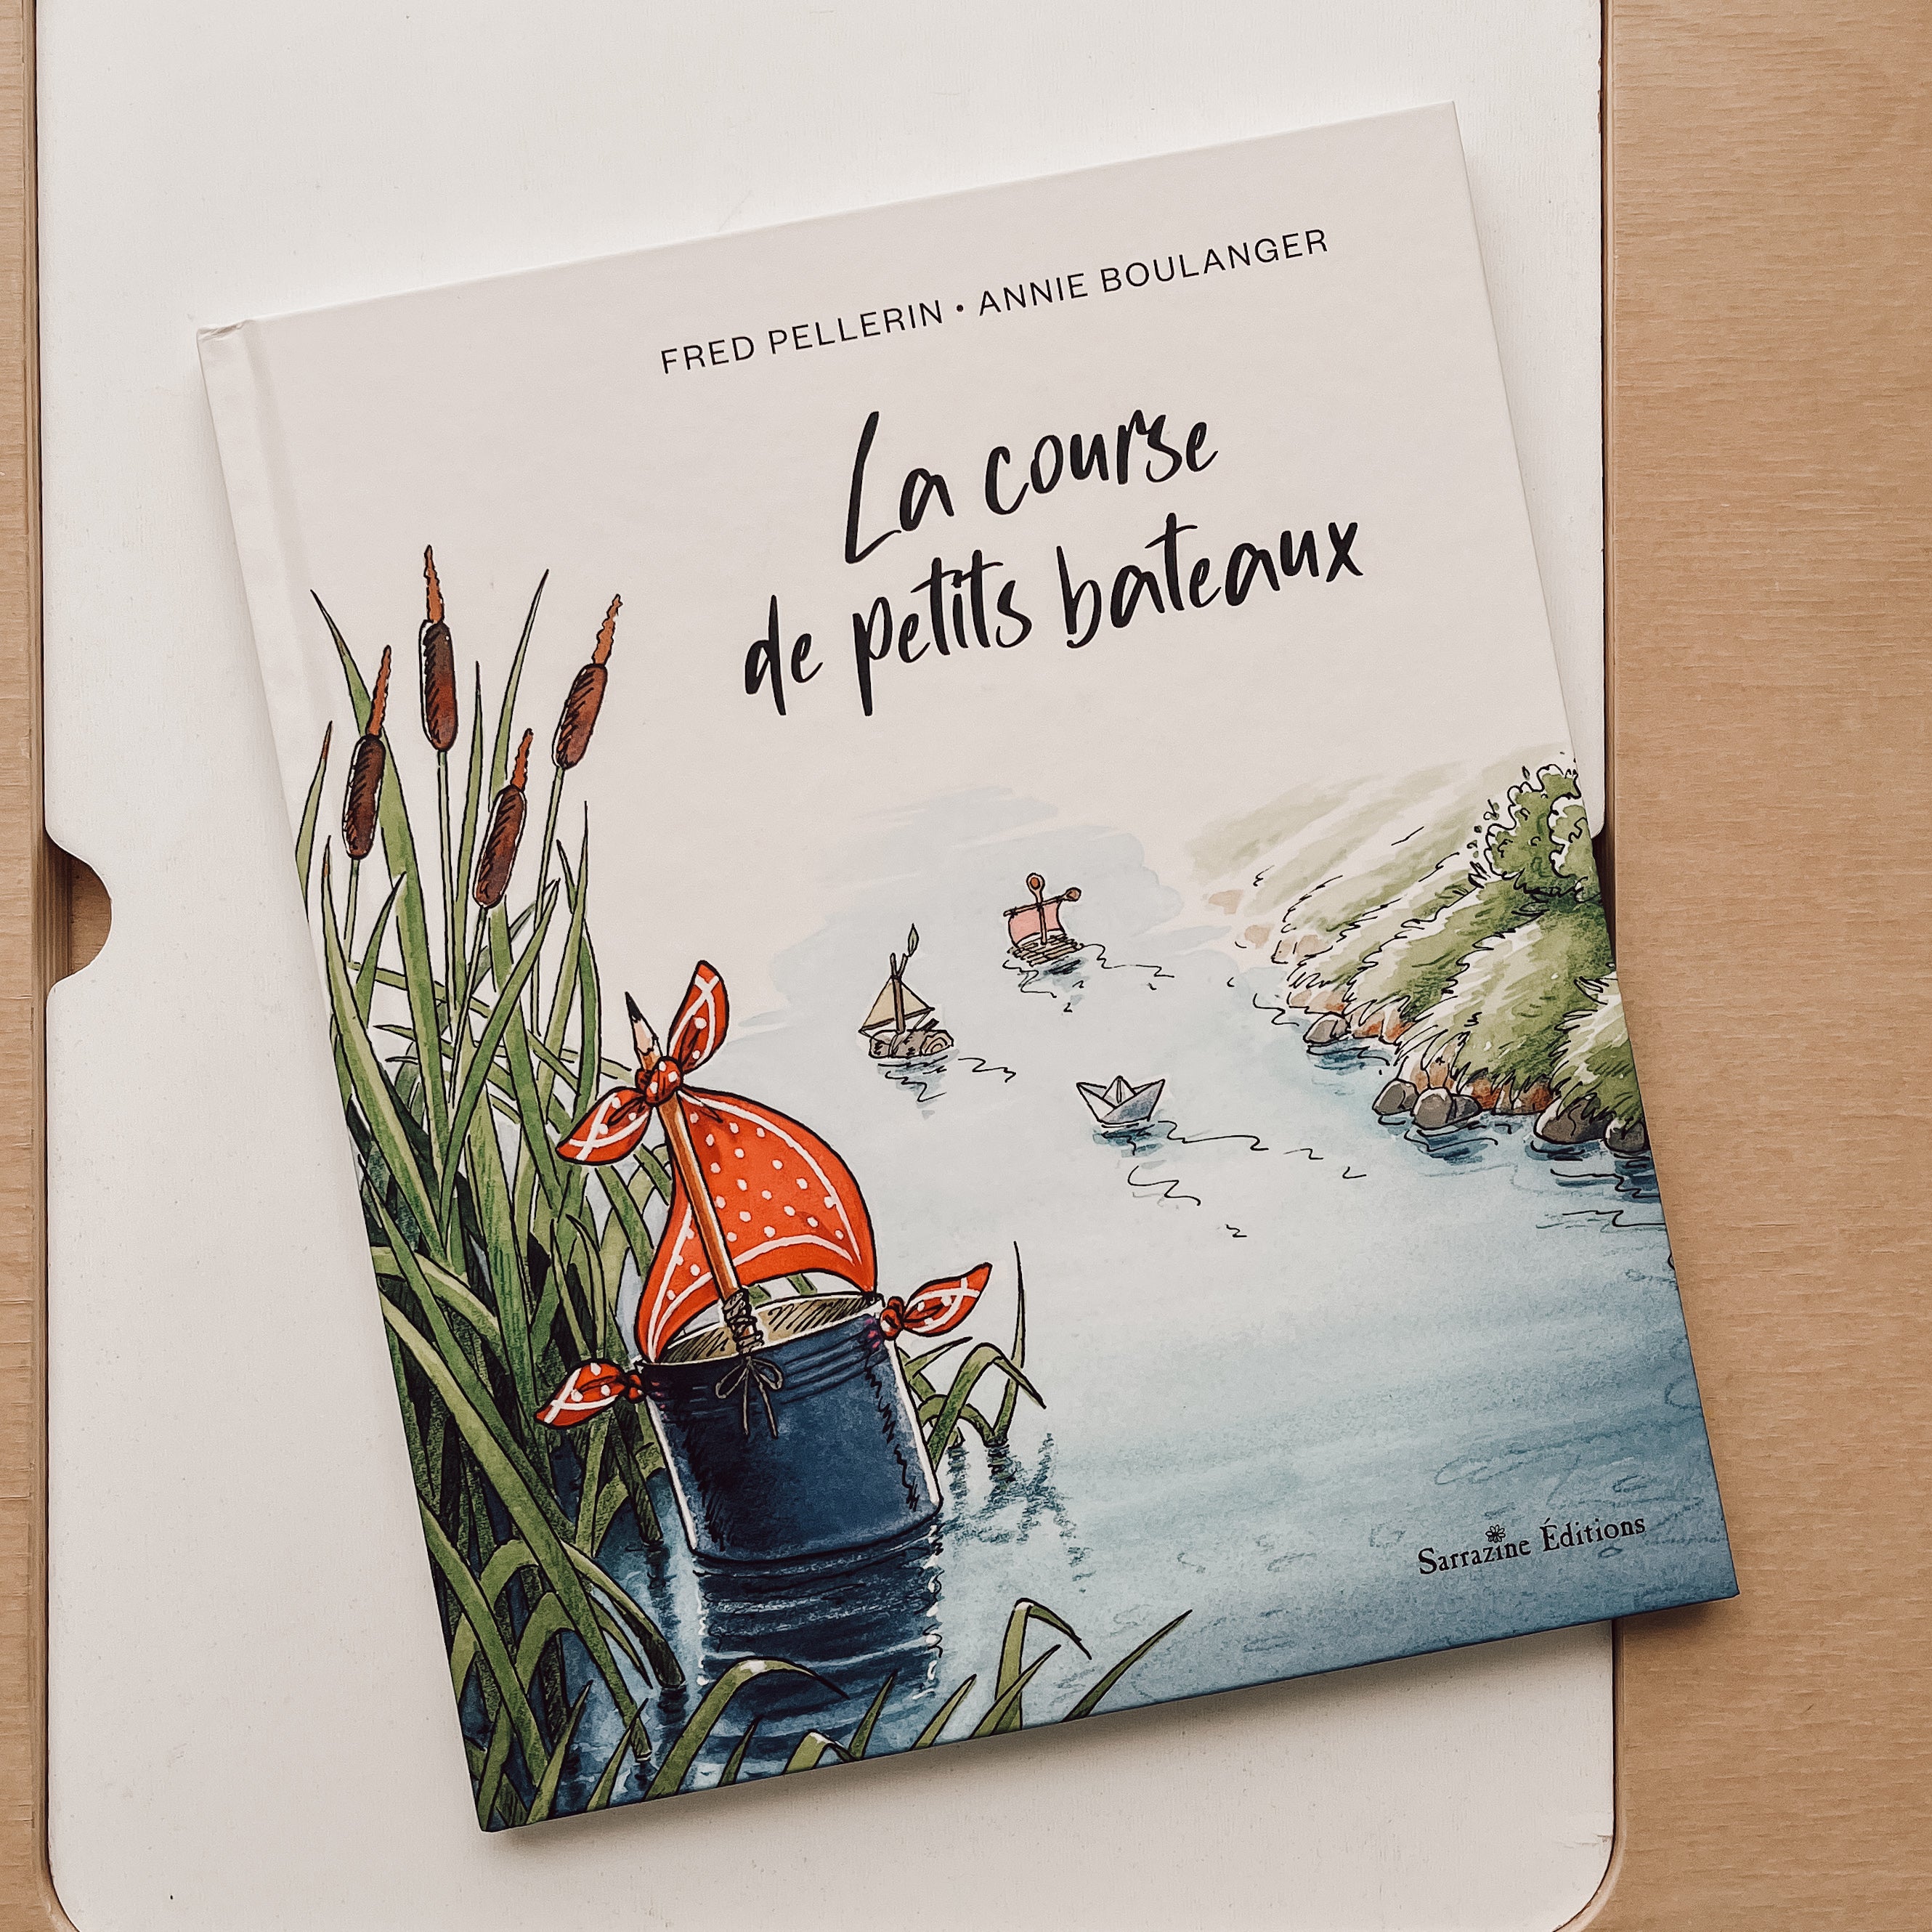 Storybook - La course de petits bateaux